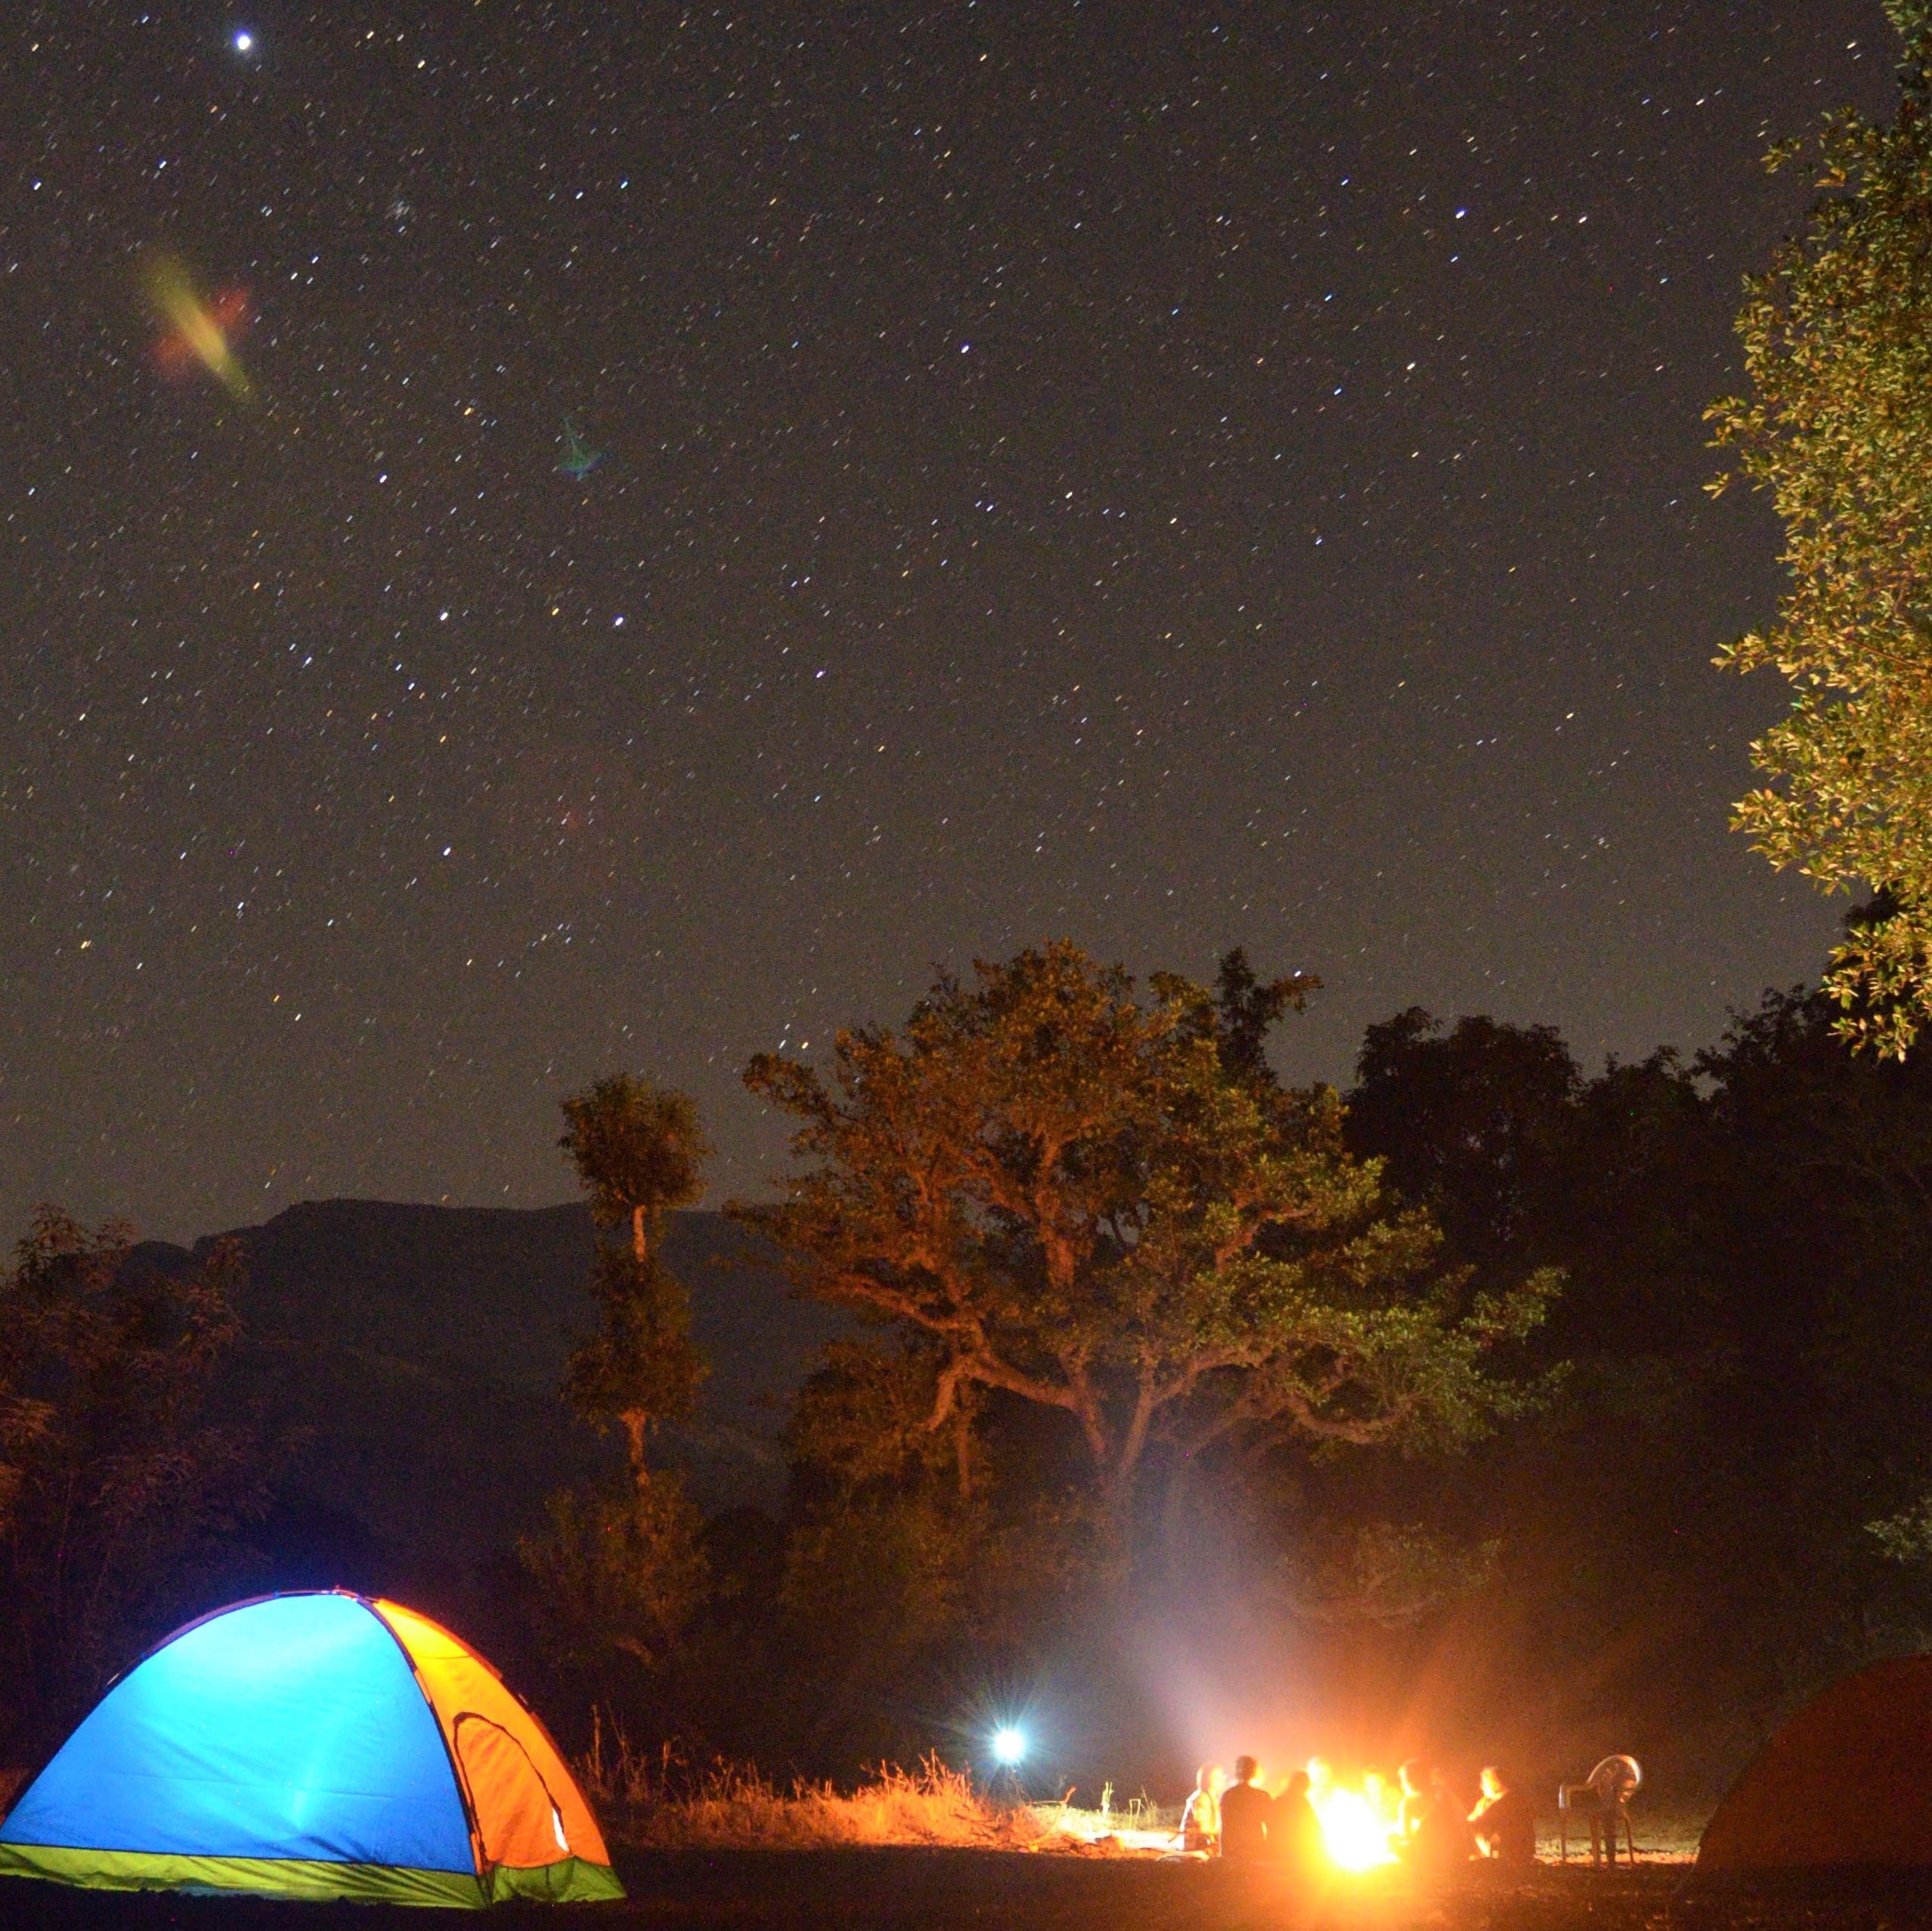 Lifeworks Star Camping